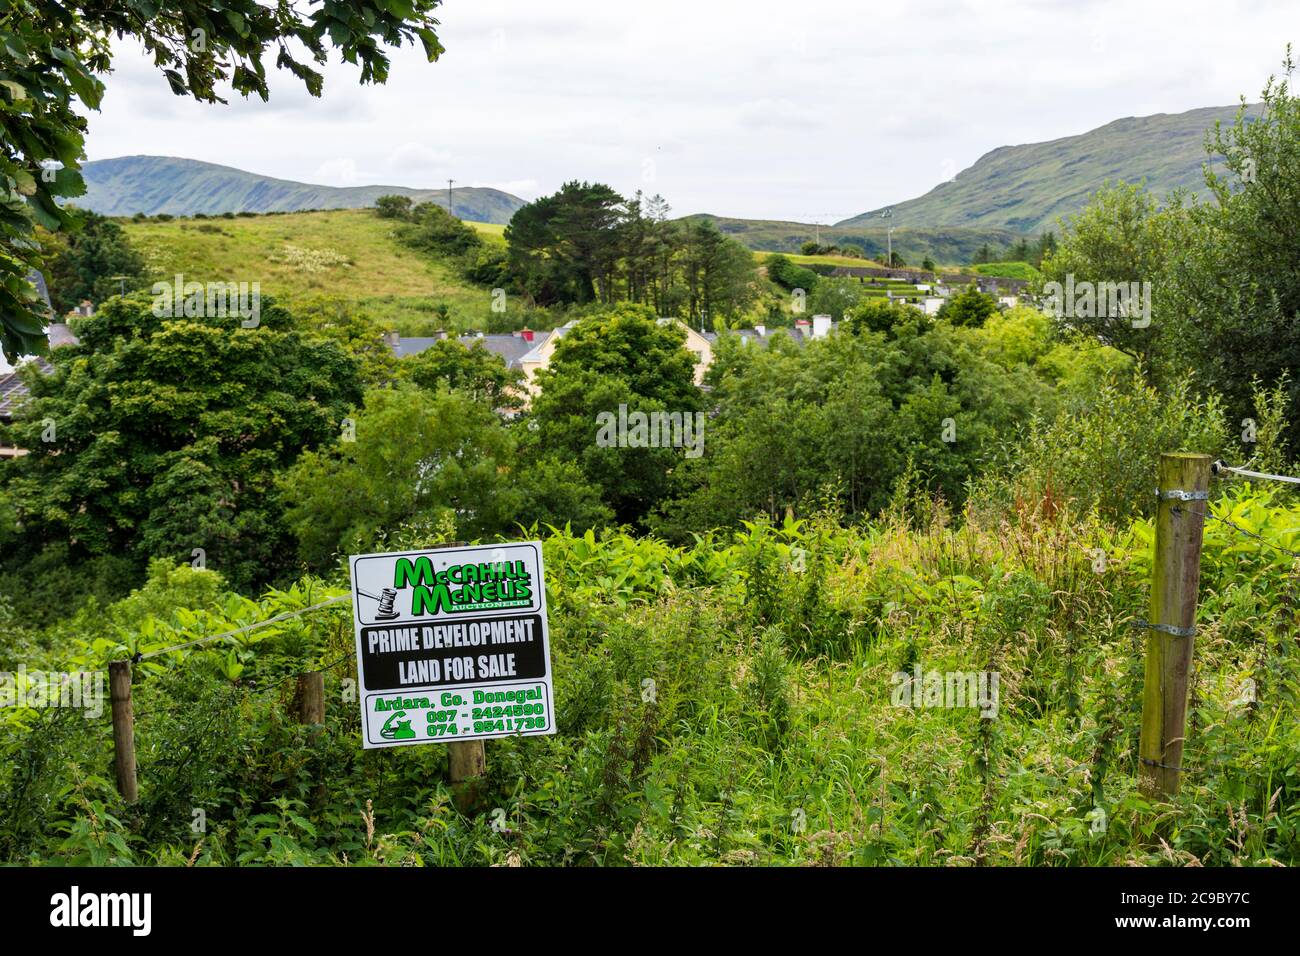 Premier terrain de développement pour la vente signalisation dans les zones rurales de l'Irlande, comté Donegal. Banque D'Images